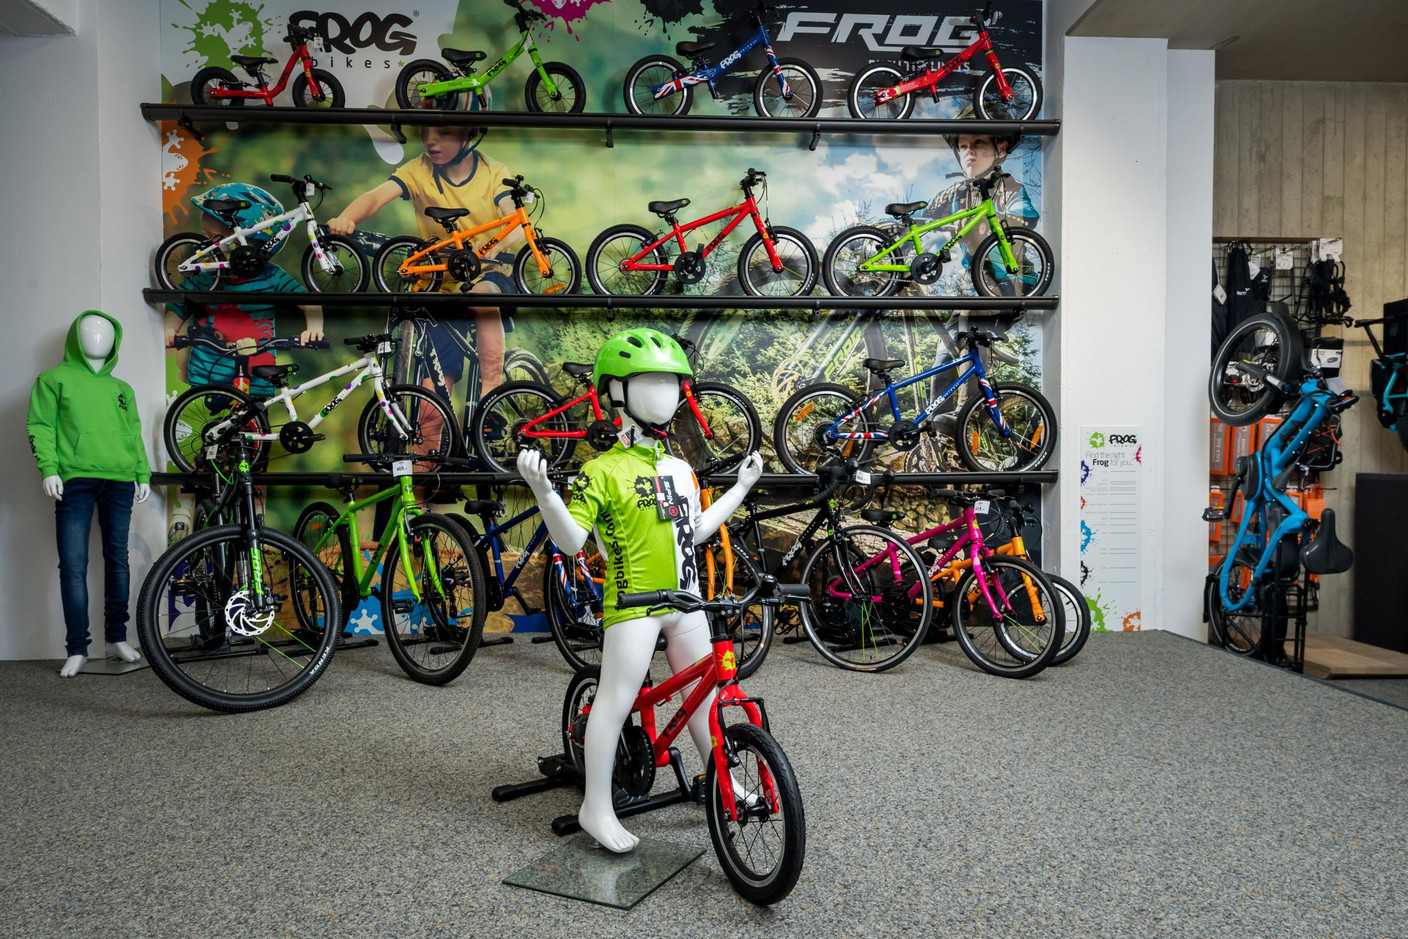 L’entreprise a choisi de travailler avec des vélos légers de la marque Frog, adaptés à la morphologie des enfants. (Photo: Nader Ghavami)